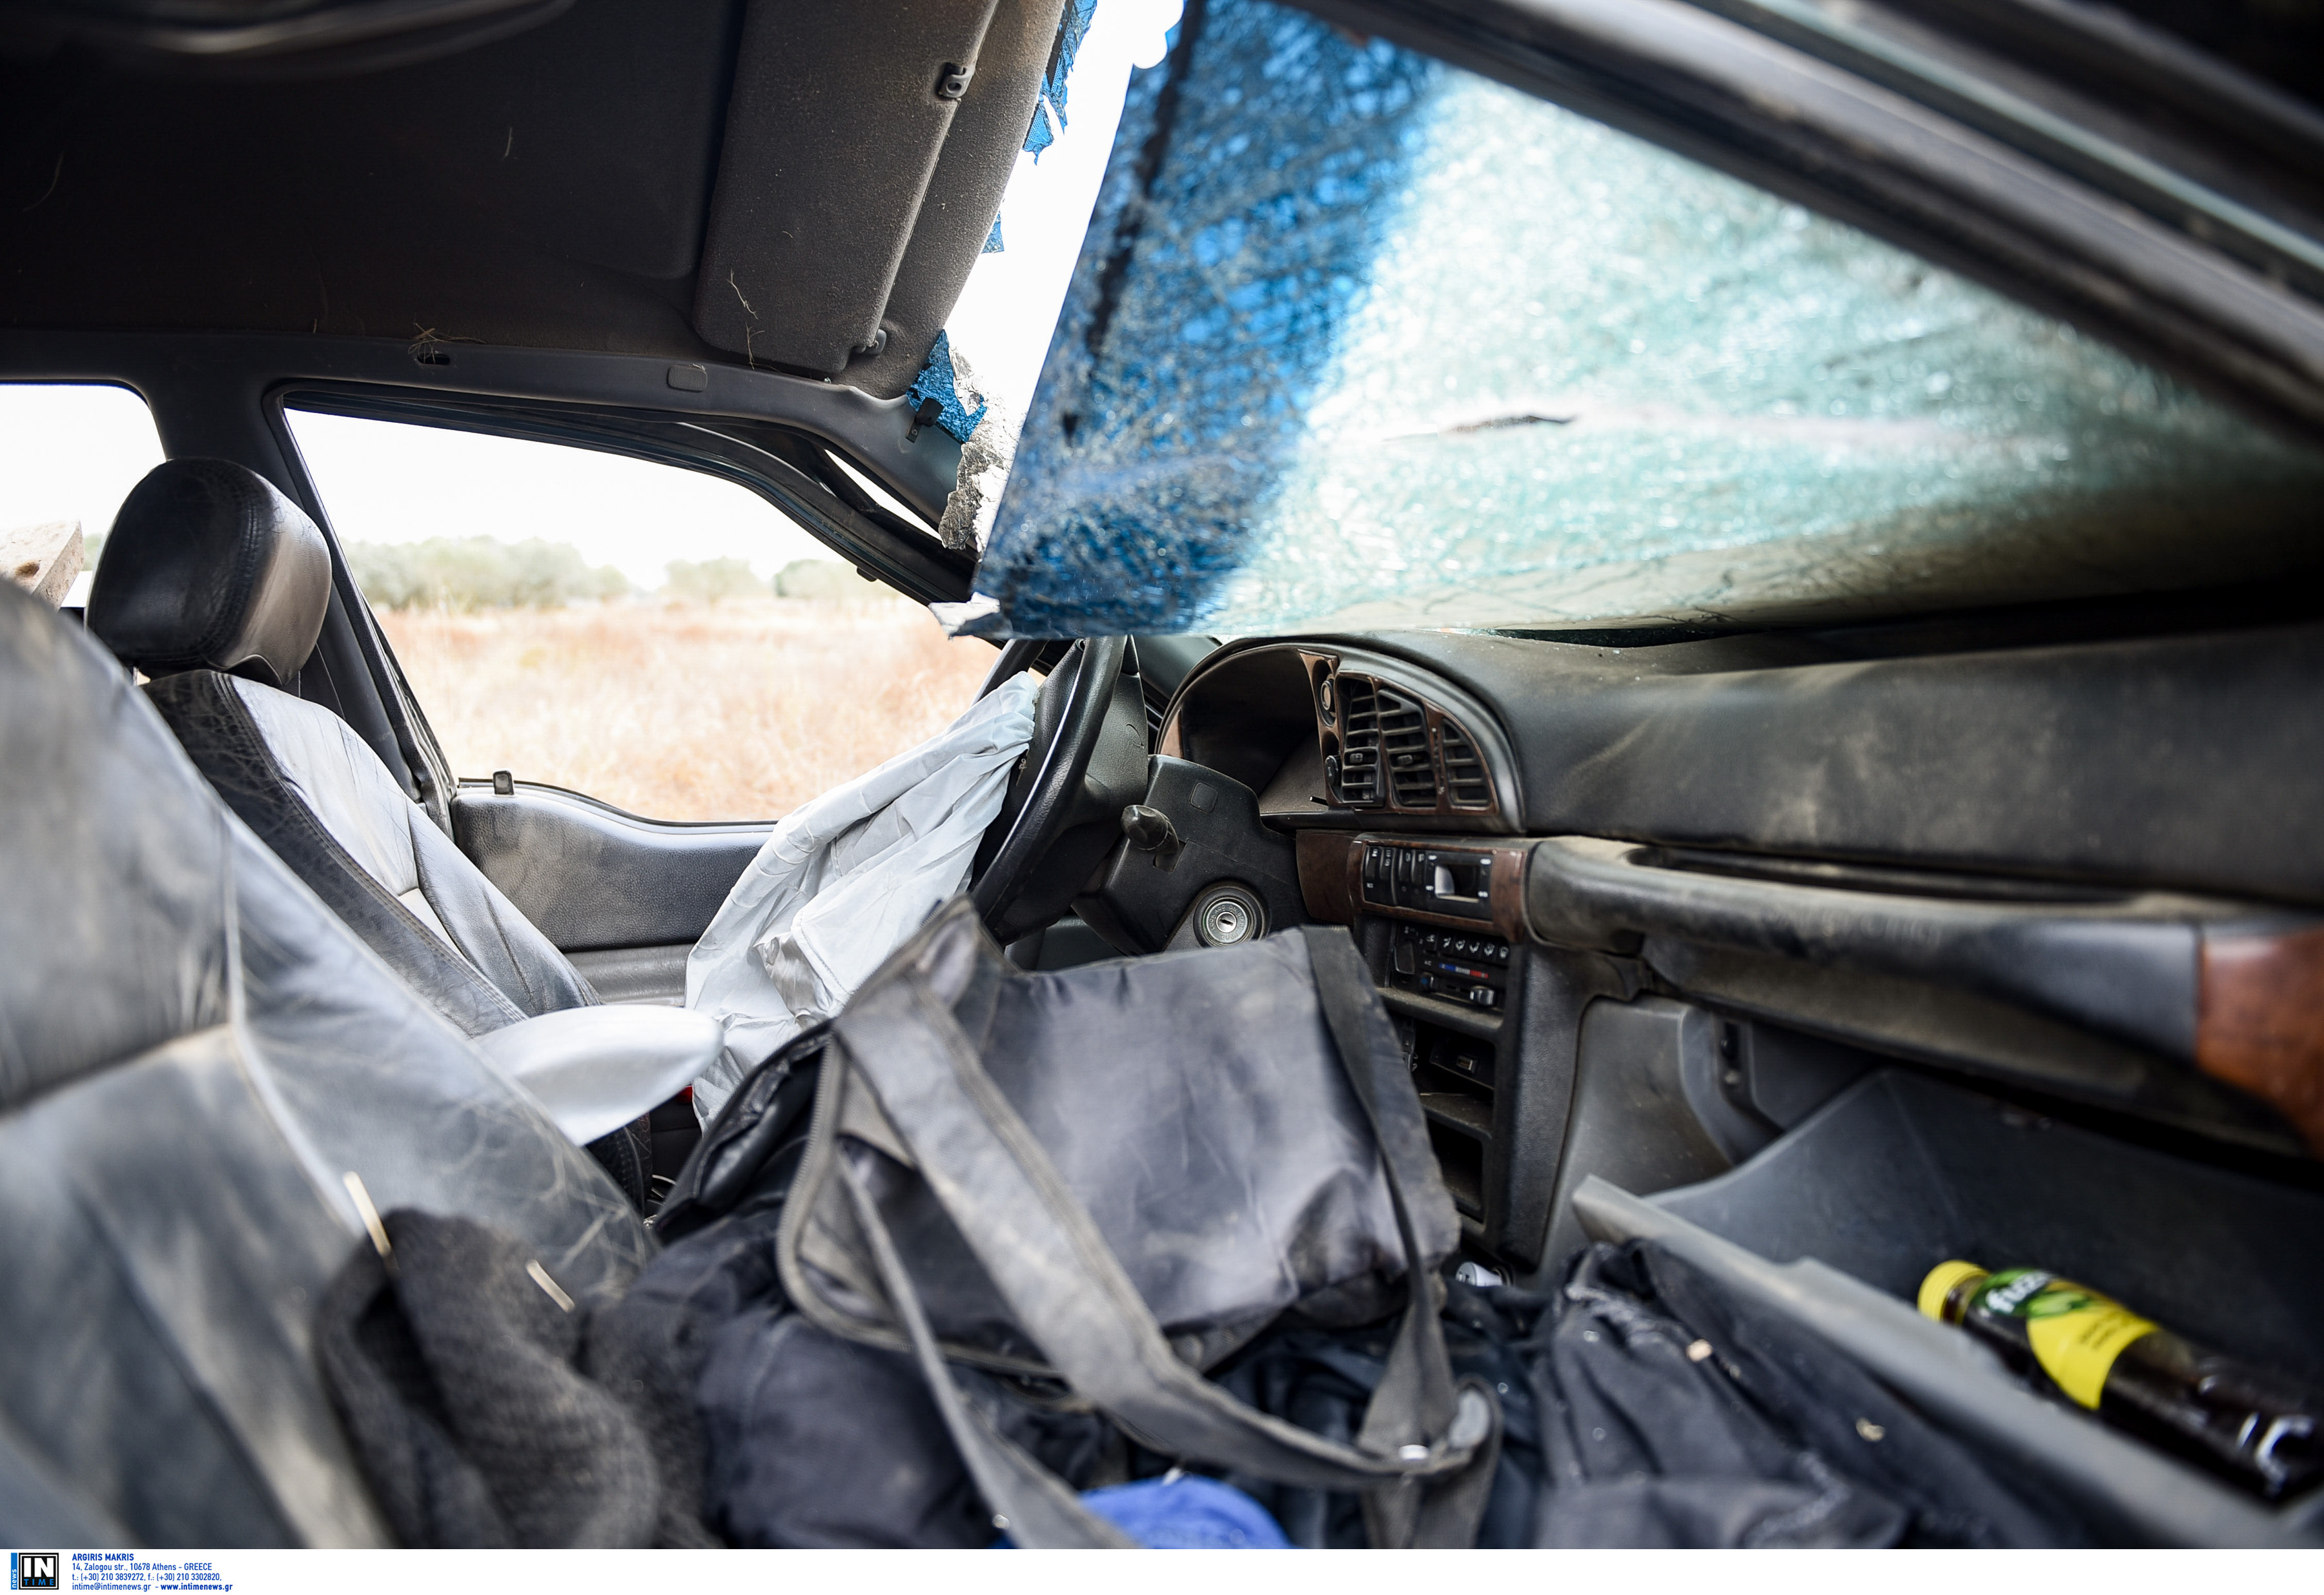 Εύβοια: Βρέθηκε νεκρός ο αγνοούμενος οδηγός! Σκληρές εικόνες στον τόπο της τραγωδίας